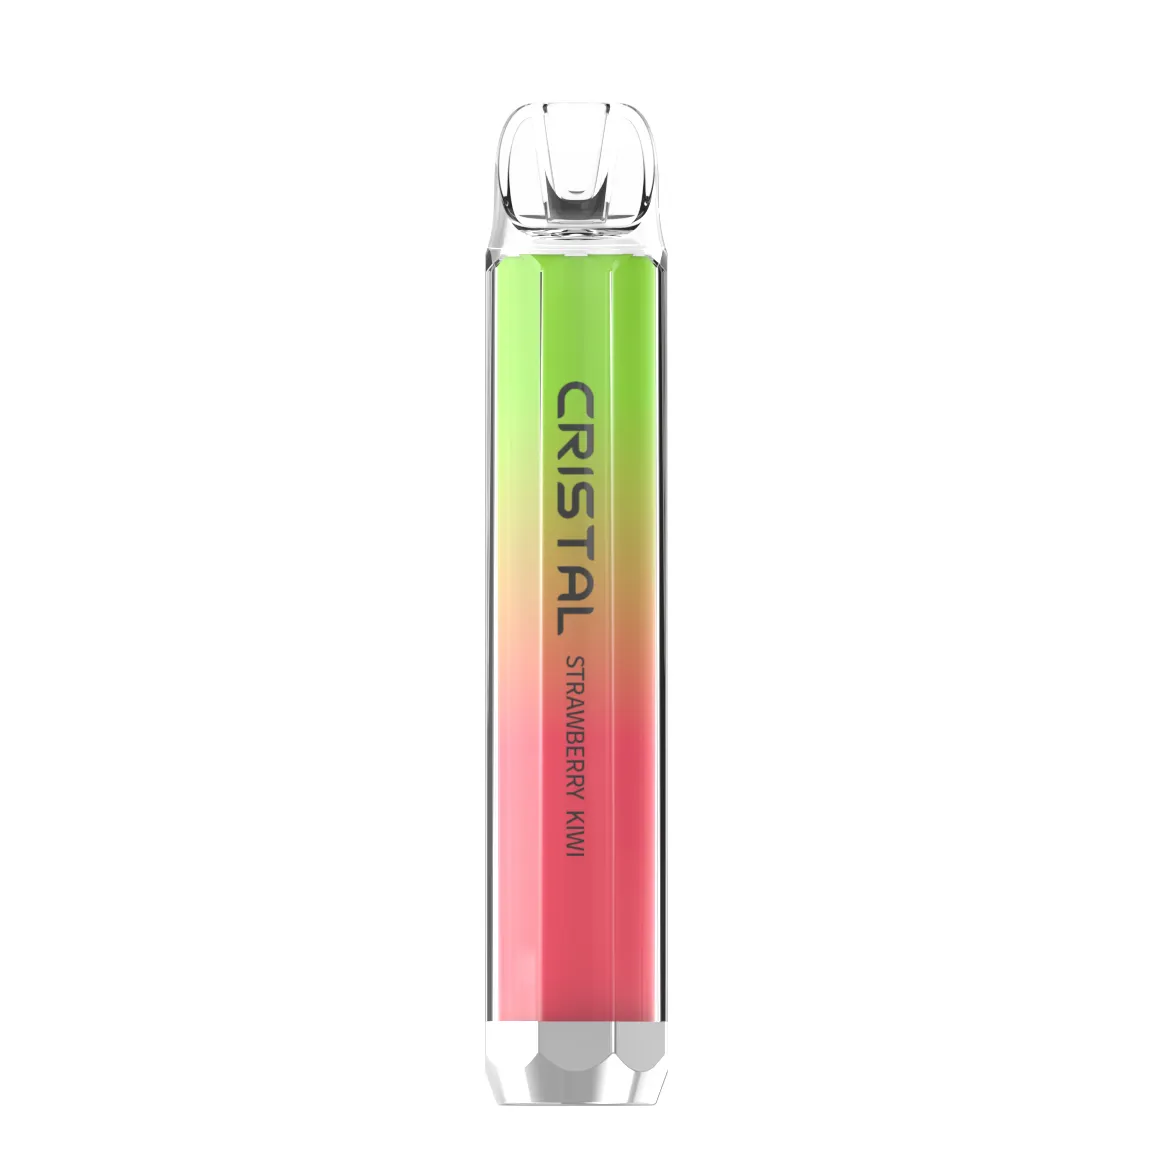 Gros Tastefog Cristal 800 bouffées vaporisateur jetable Vaper 2% 2 ml 500 mAh 10 saveurs certificat TPD cigarette électronique